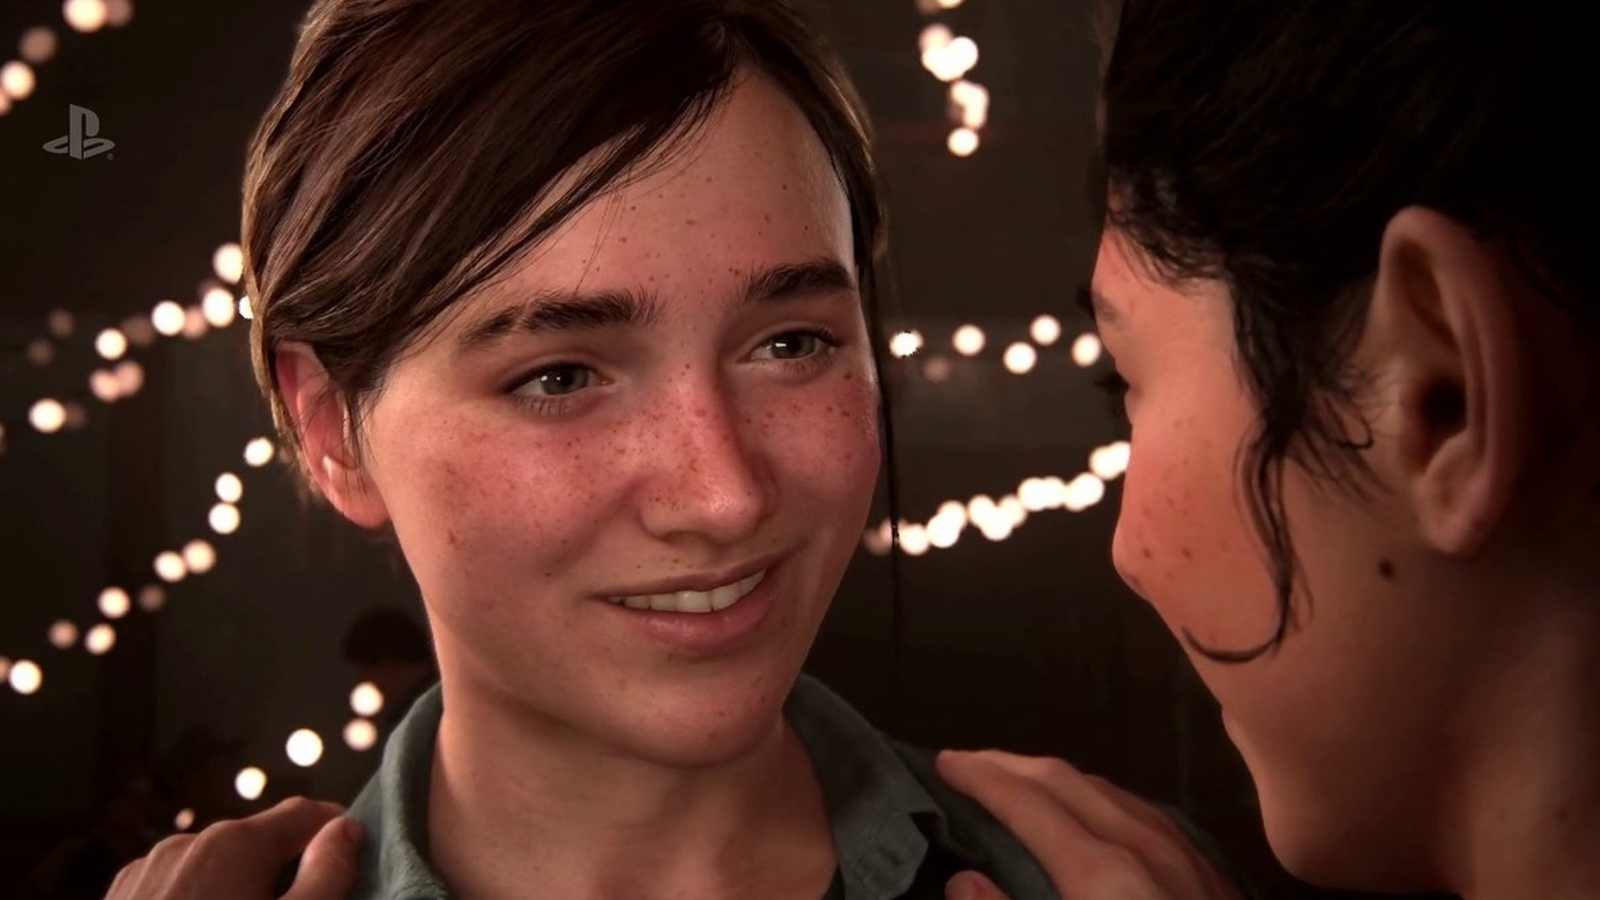 Série de The Last of Us não mudará sexualidade de Ellie